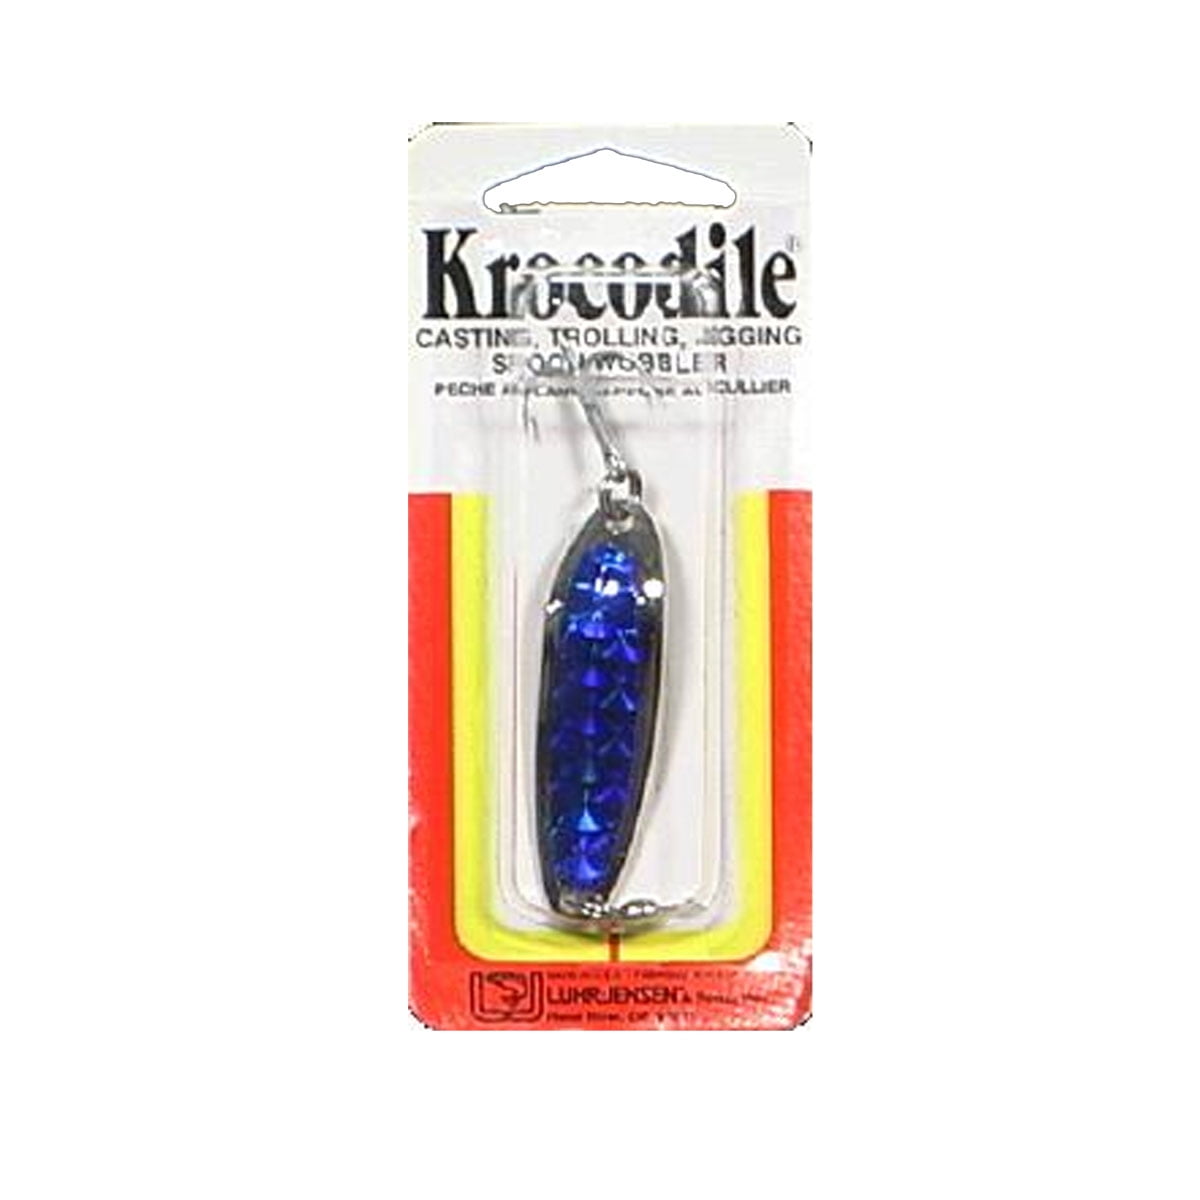 Luhr Jensen Krocodile 1/4oz Spoon Fishing Lure 2 1/8 Chrome/Blue Prism-Lite